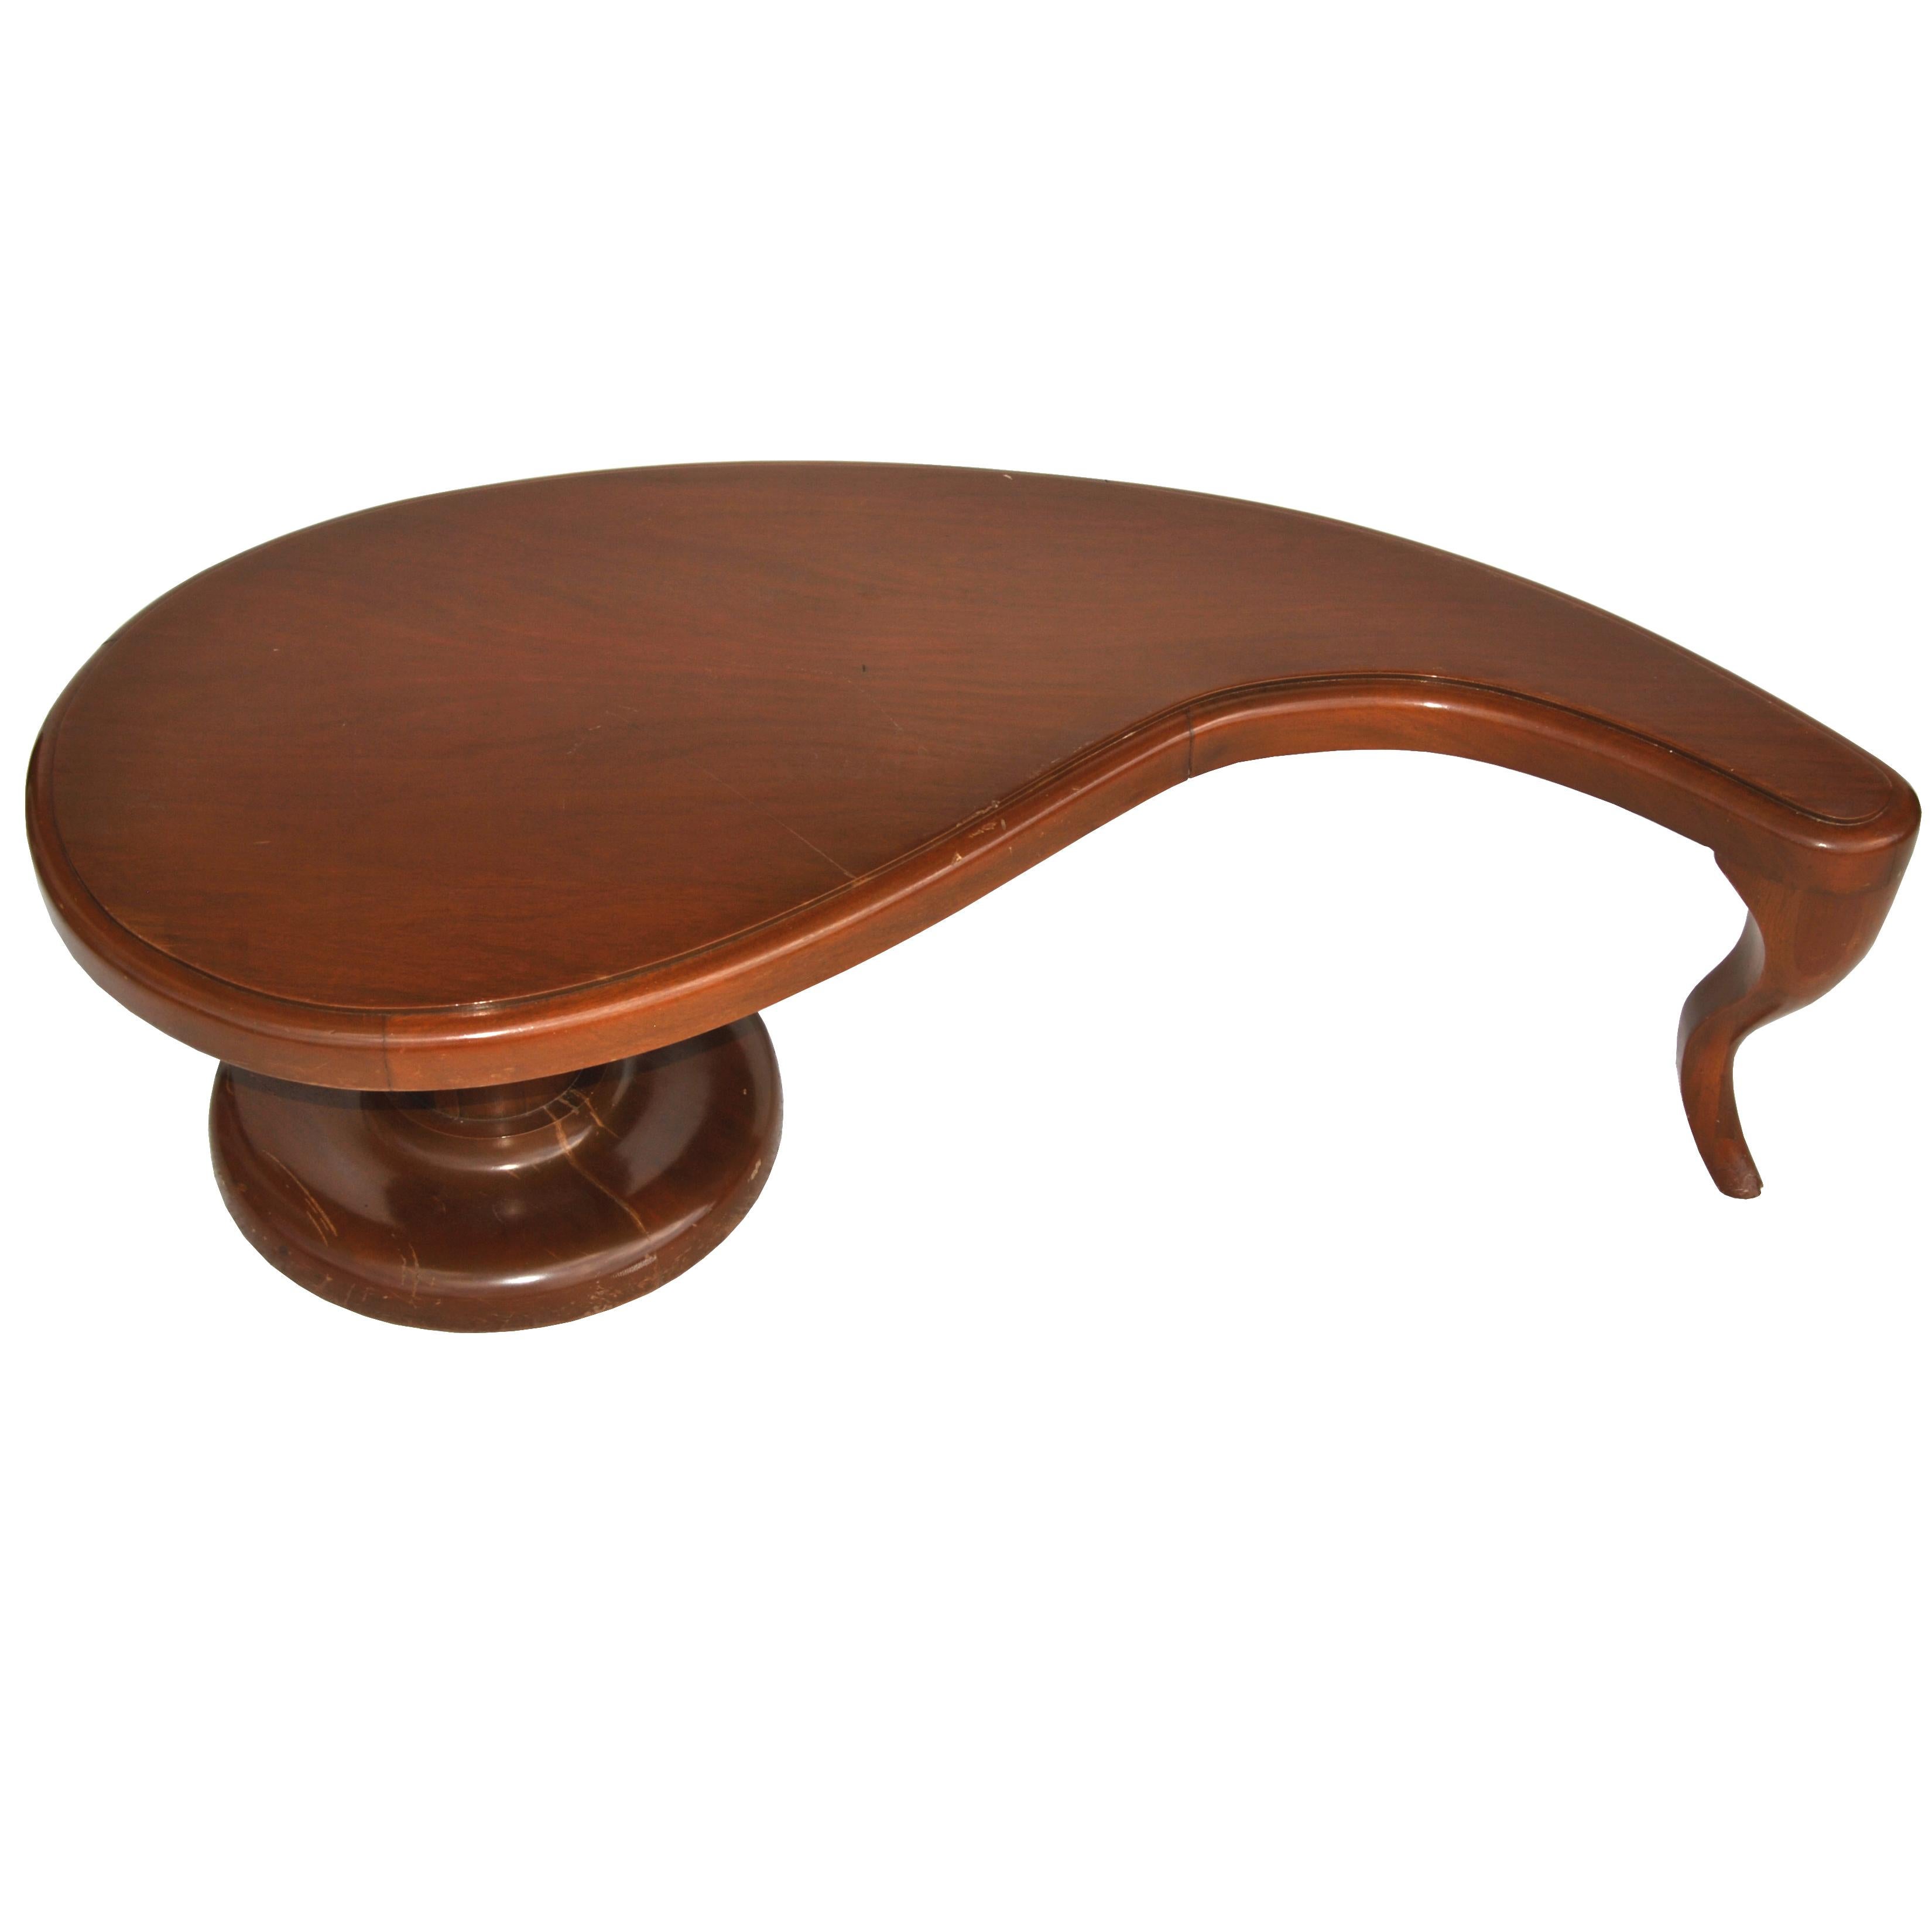 Table basse de style néoclassique à la manière de John Tavis,
1950s
 

Un design intéressant avec un plateau de forme organique associé à un piédestal classique et un pied sabre dans un riche acajou.